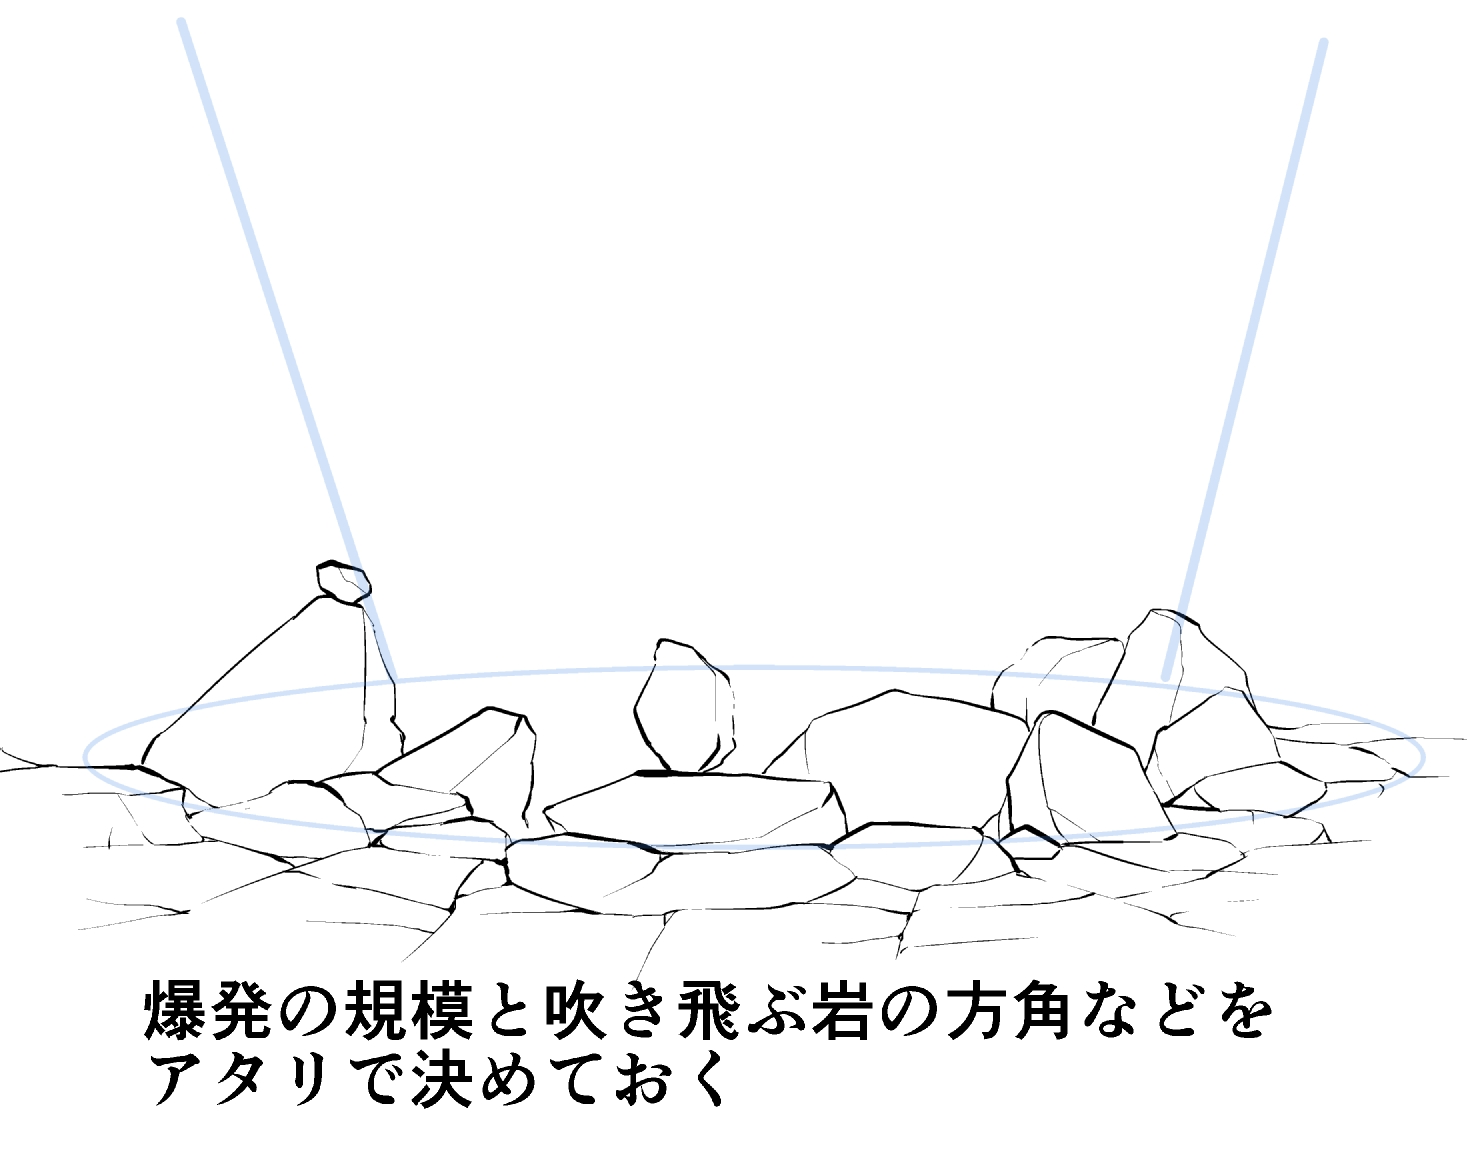 漫画背景テクニック 岩 崖の描き方 質感の描き分けや 砕ける岩 など迫力の出し方解説 Oyukihan S Blog 漫 パワー充電所